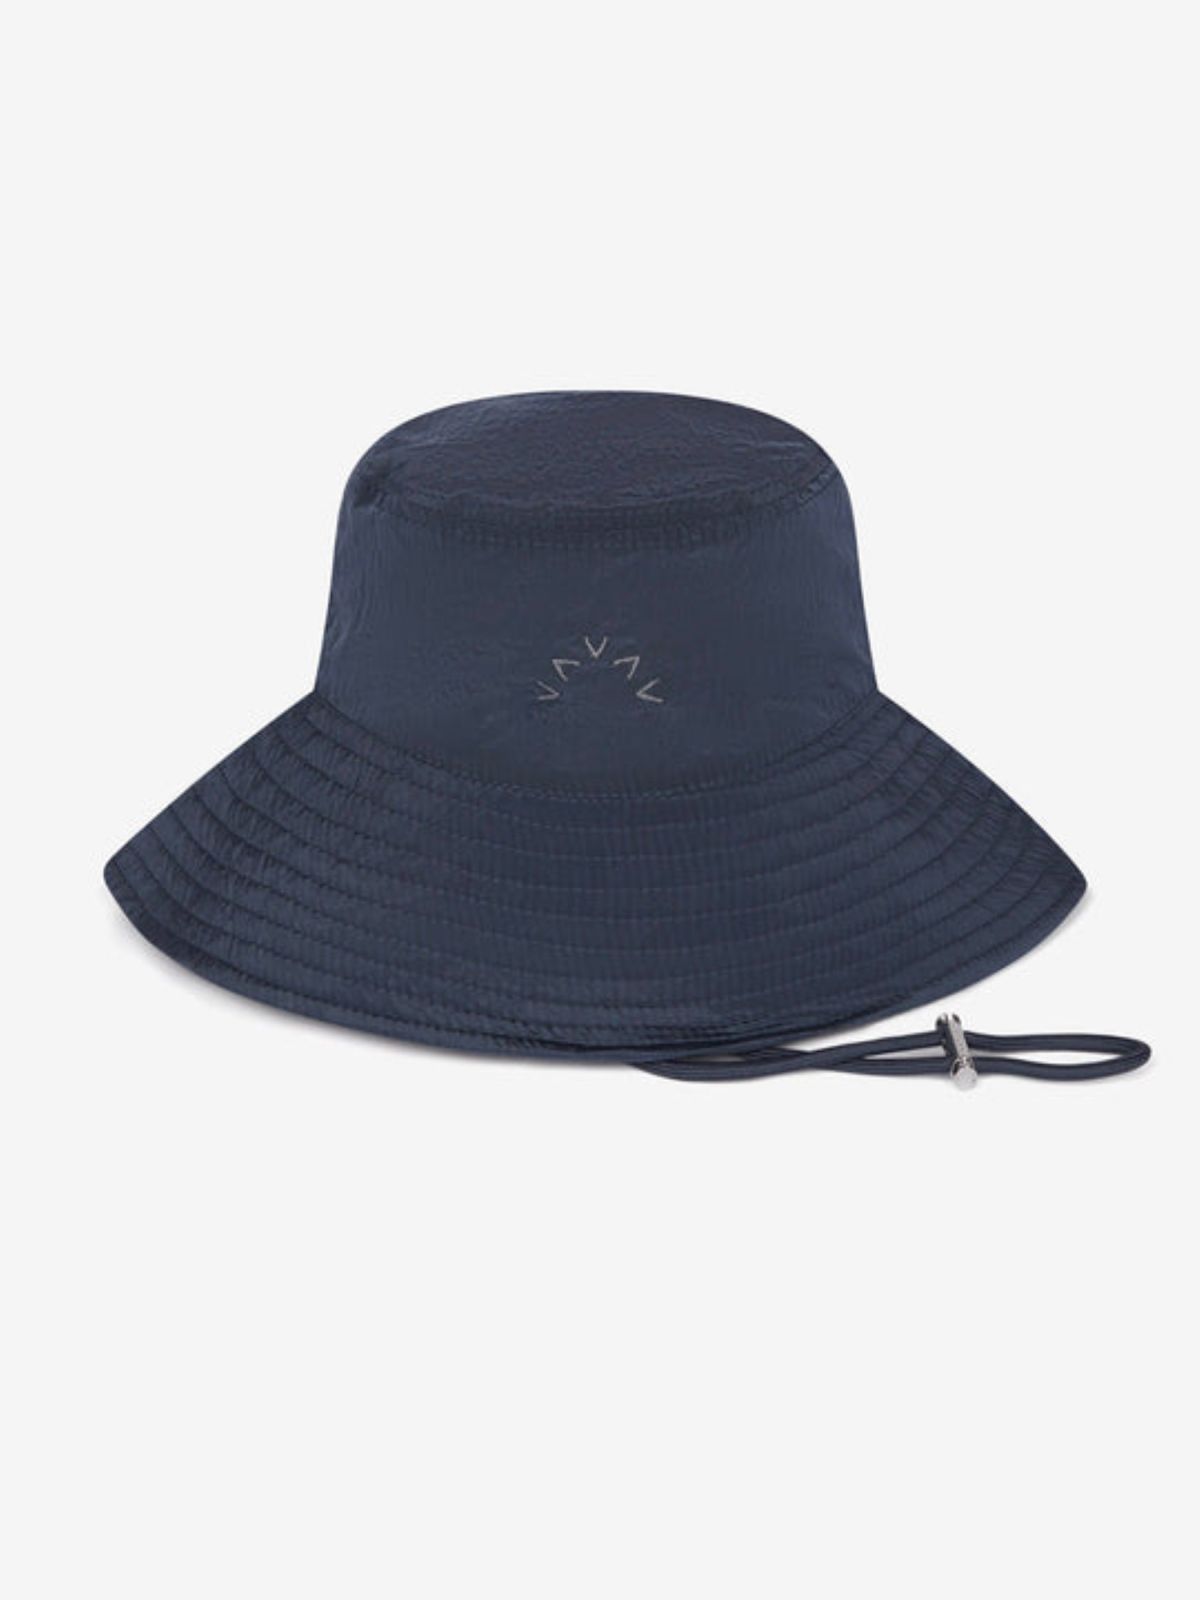  כובע באקט עם לוגו של VARLEY